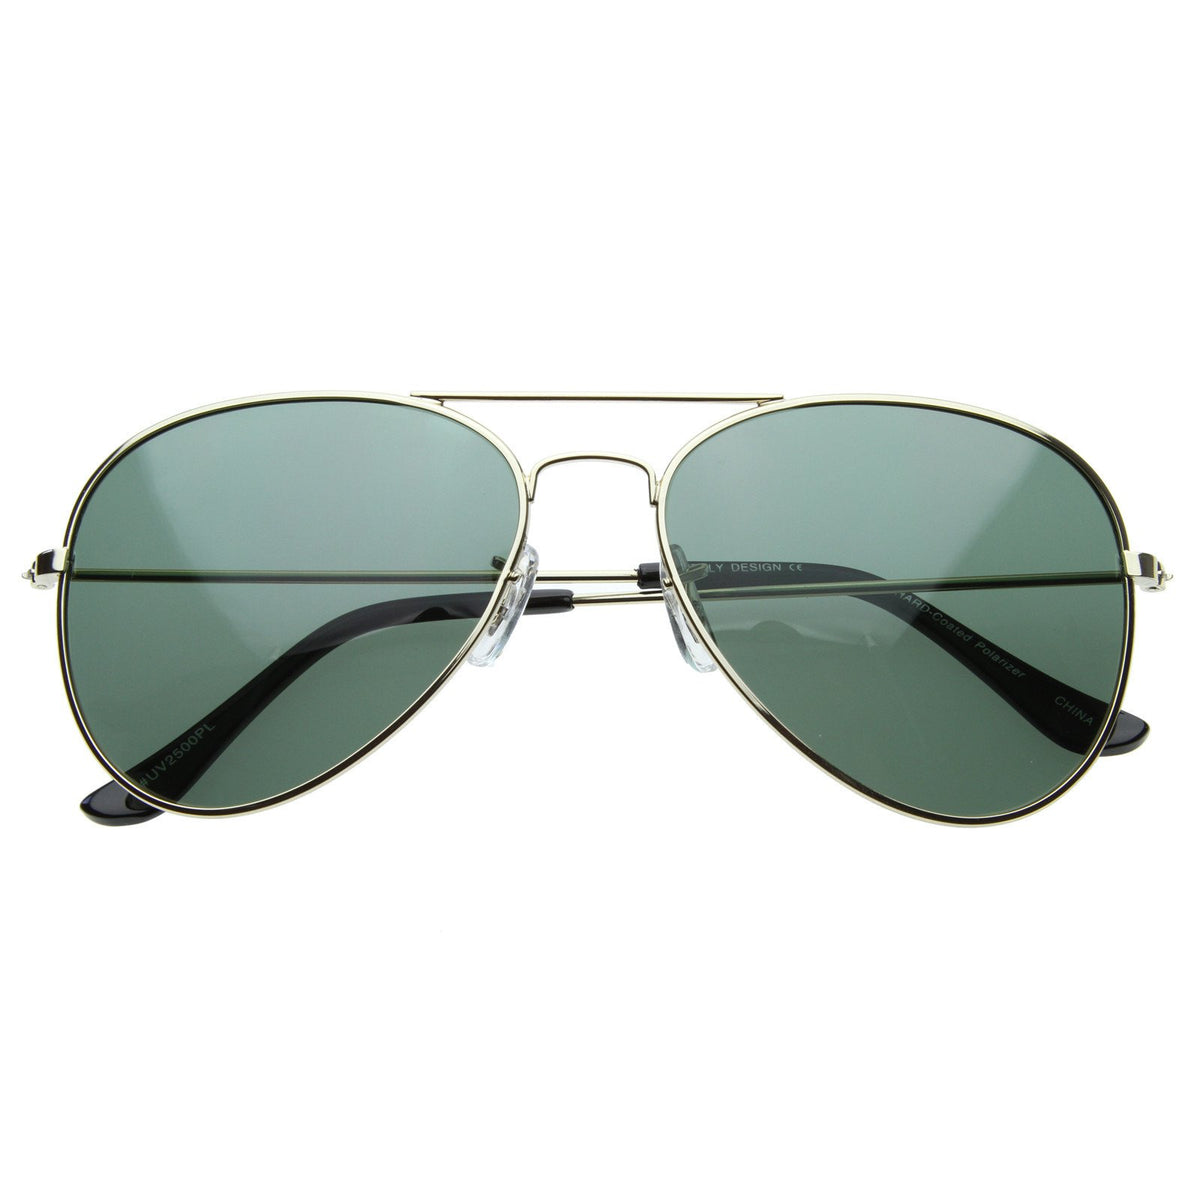 Premium Classic Polarized Lens Metal Aviator Sunglasses 6010 - zeroUV